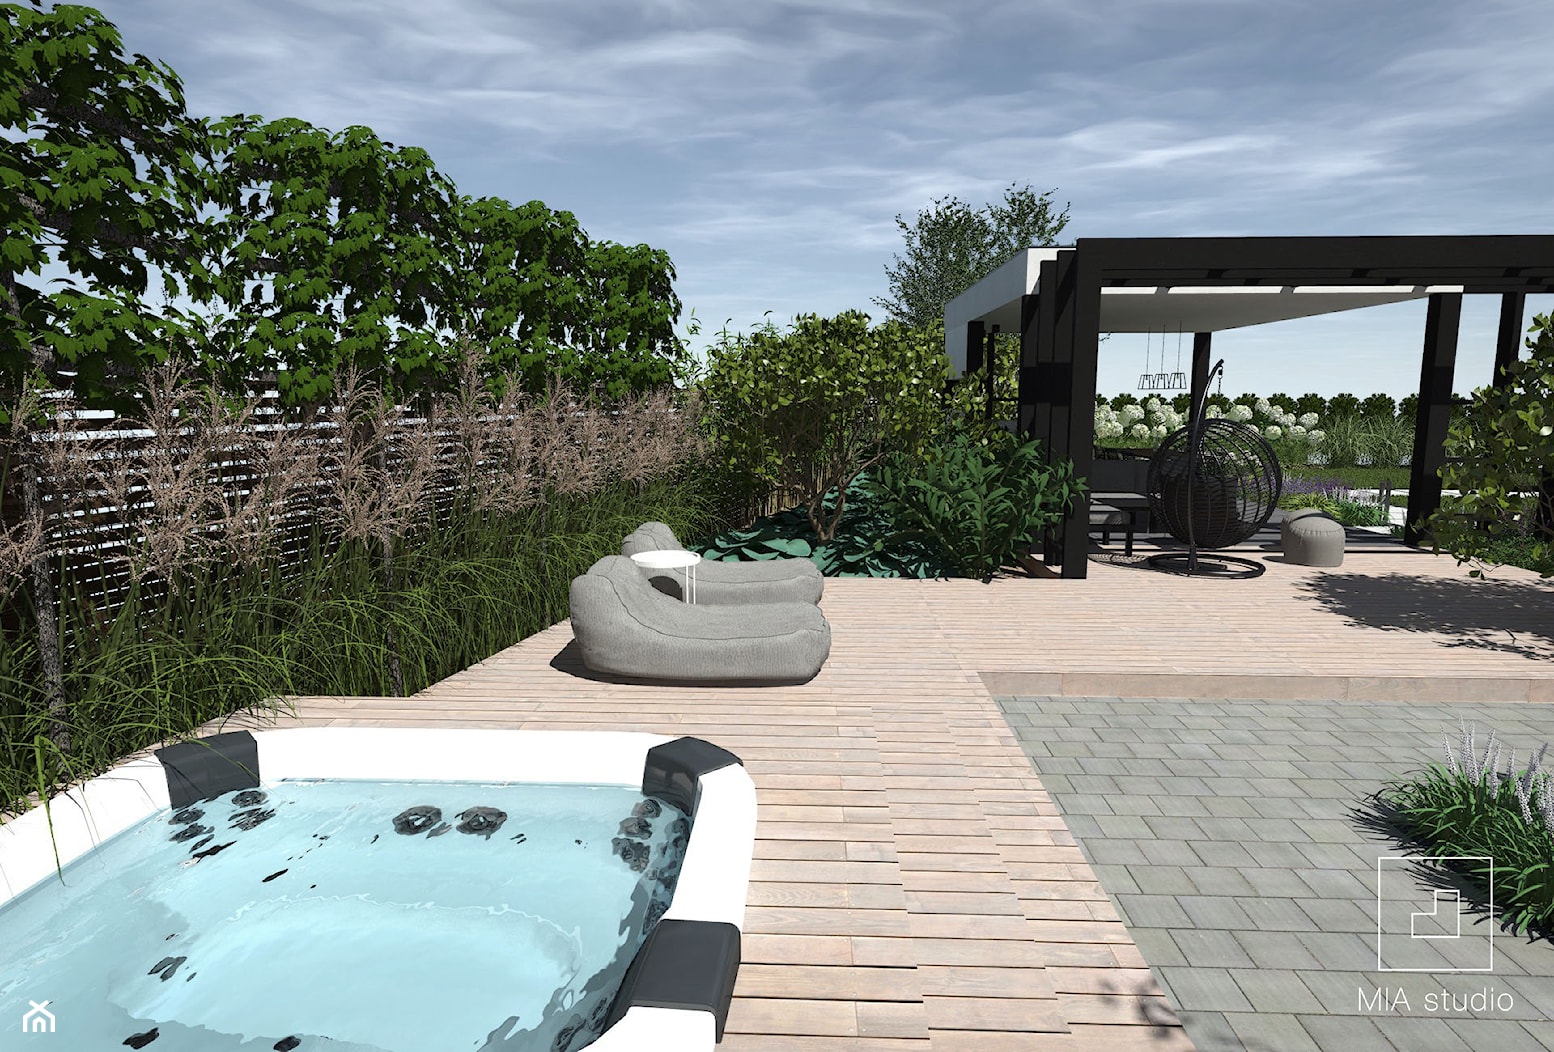 Ogród z altaną i jacuzzi - zdjęcie od MIA studio - Homebook